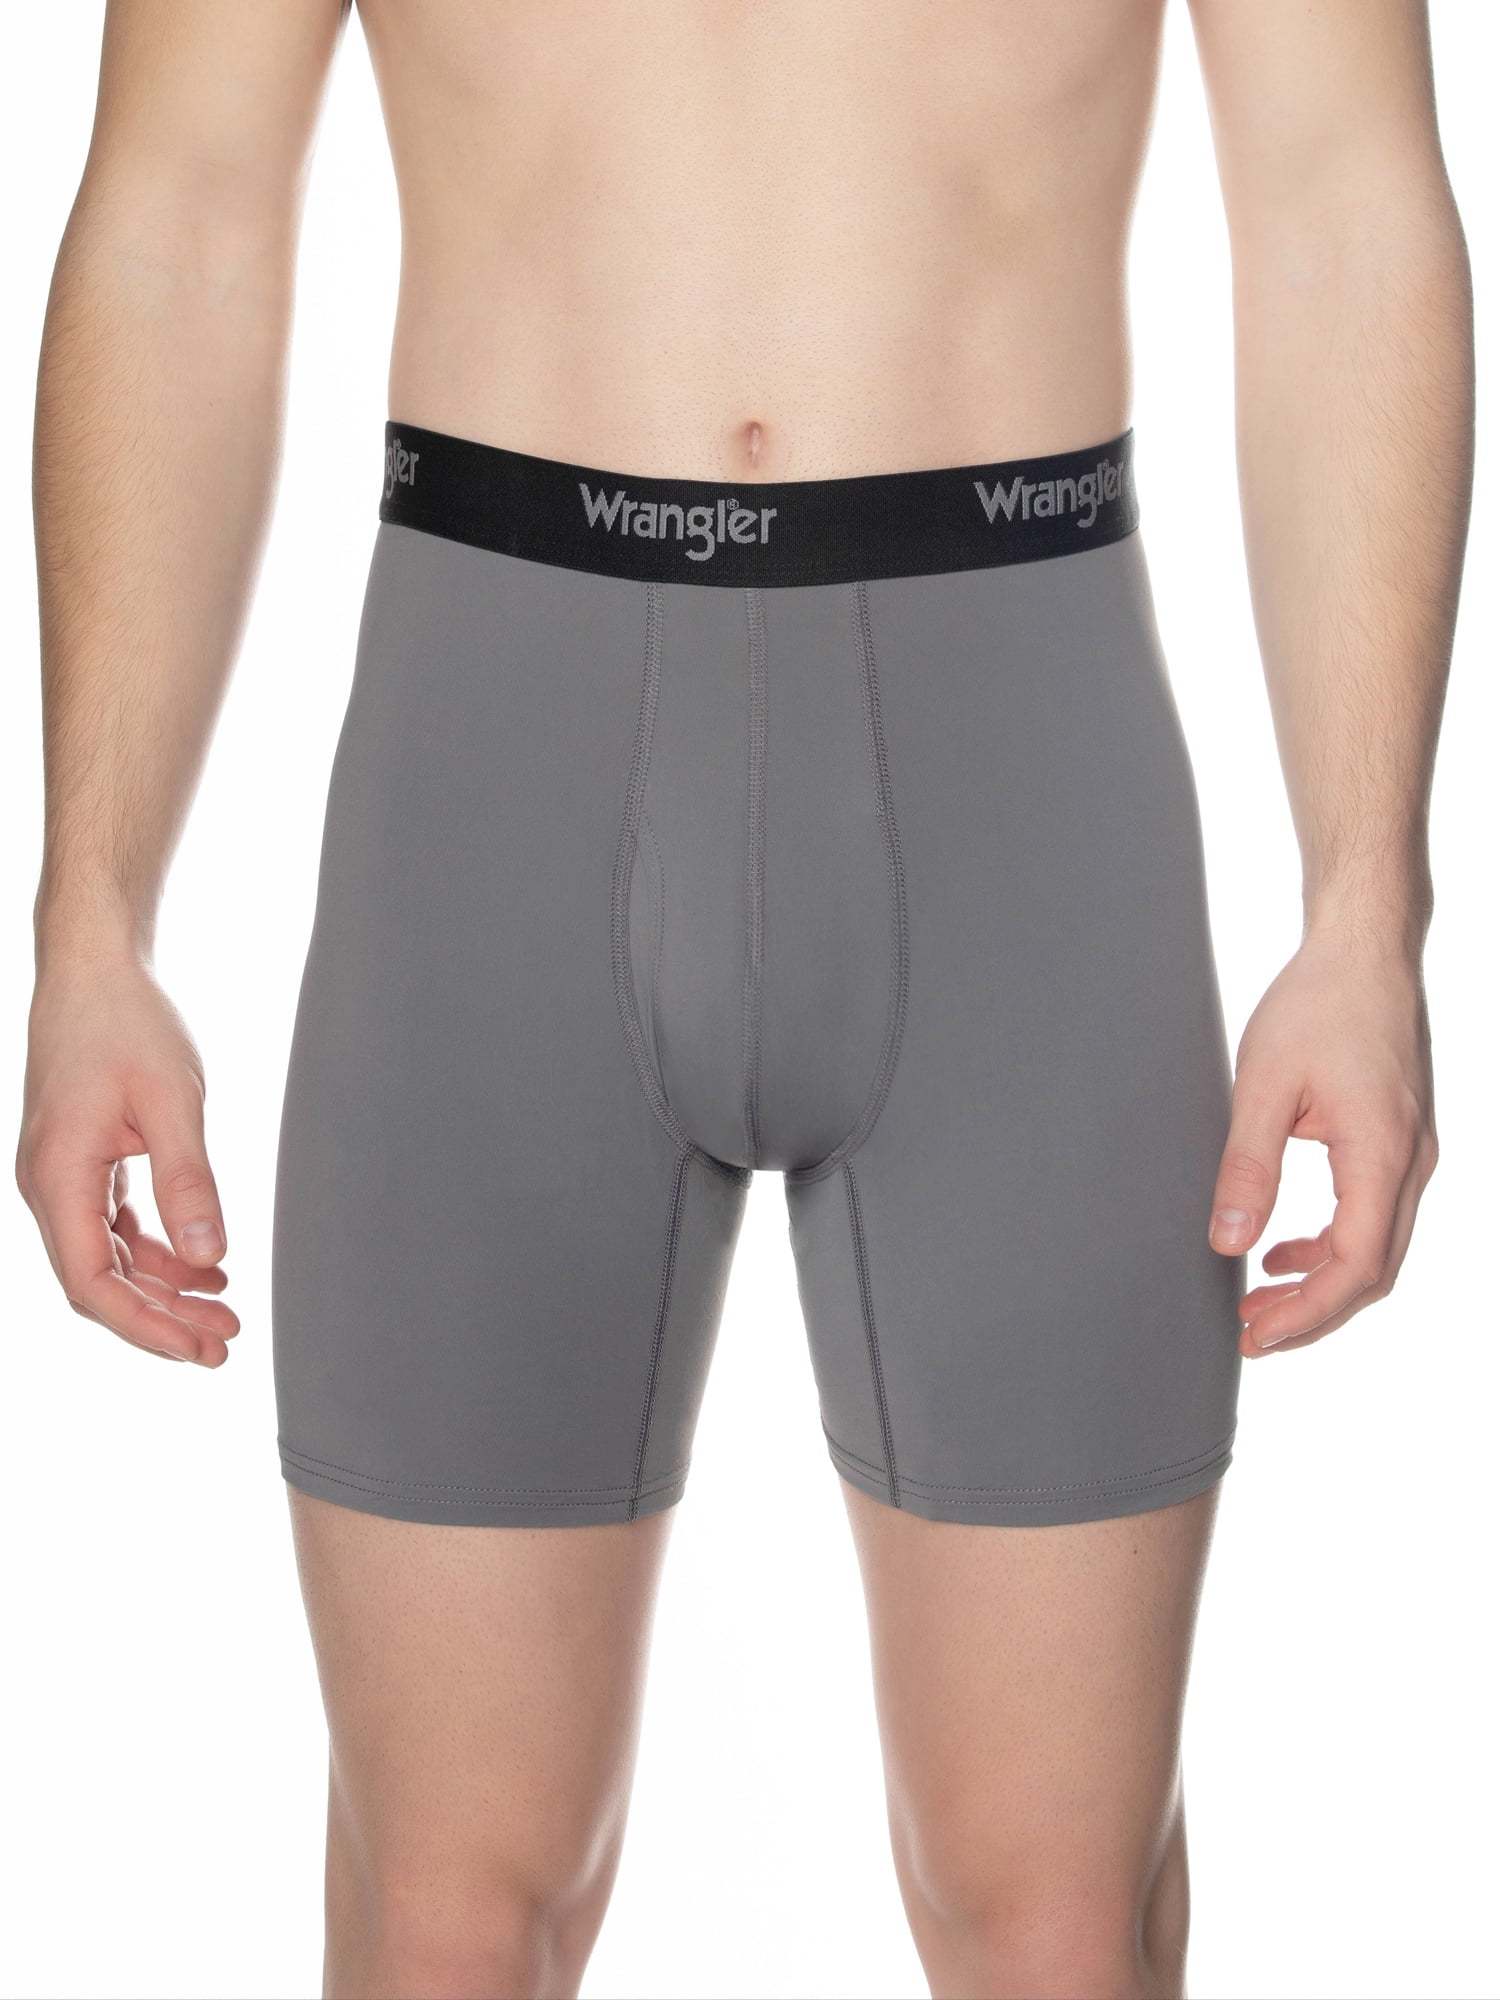 Wrangler Men's Cooling Stretch Nylon Boxer Briefs, 3 Pack 